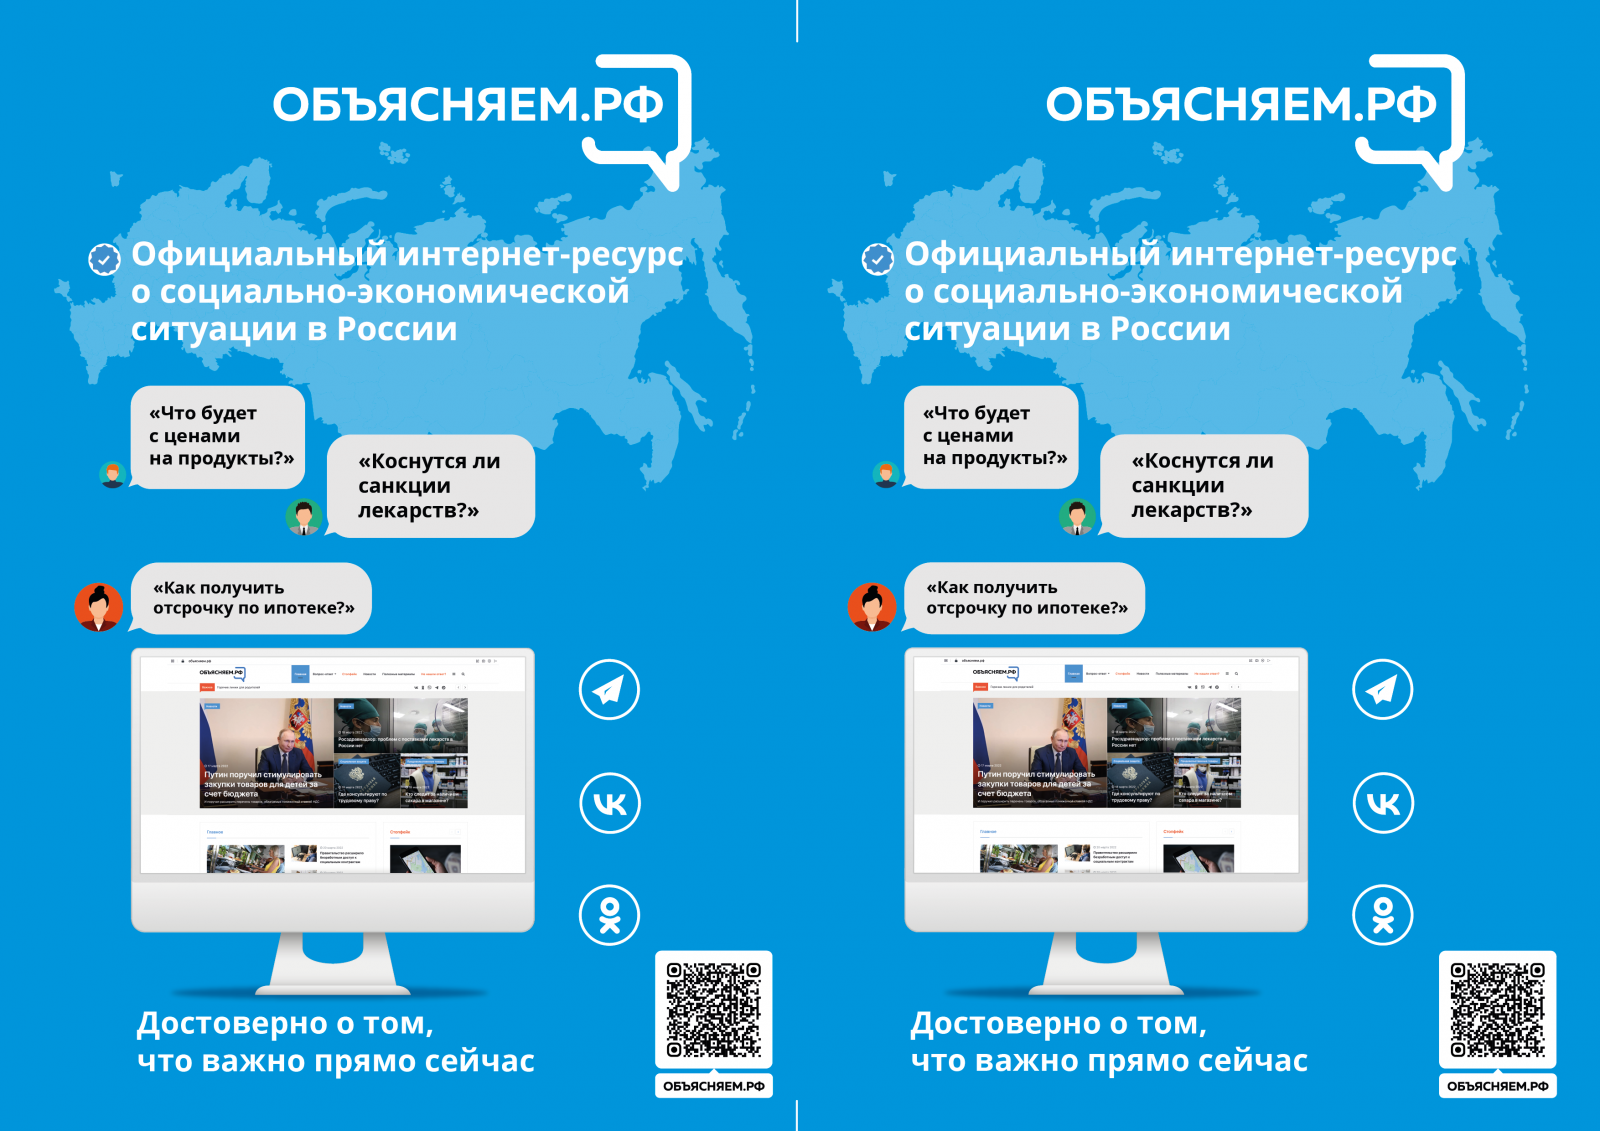 taimyr-expo.ru – справочно-информационный портал о русском языке